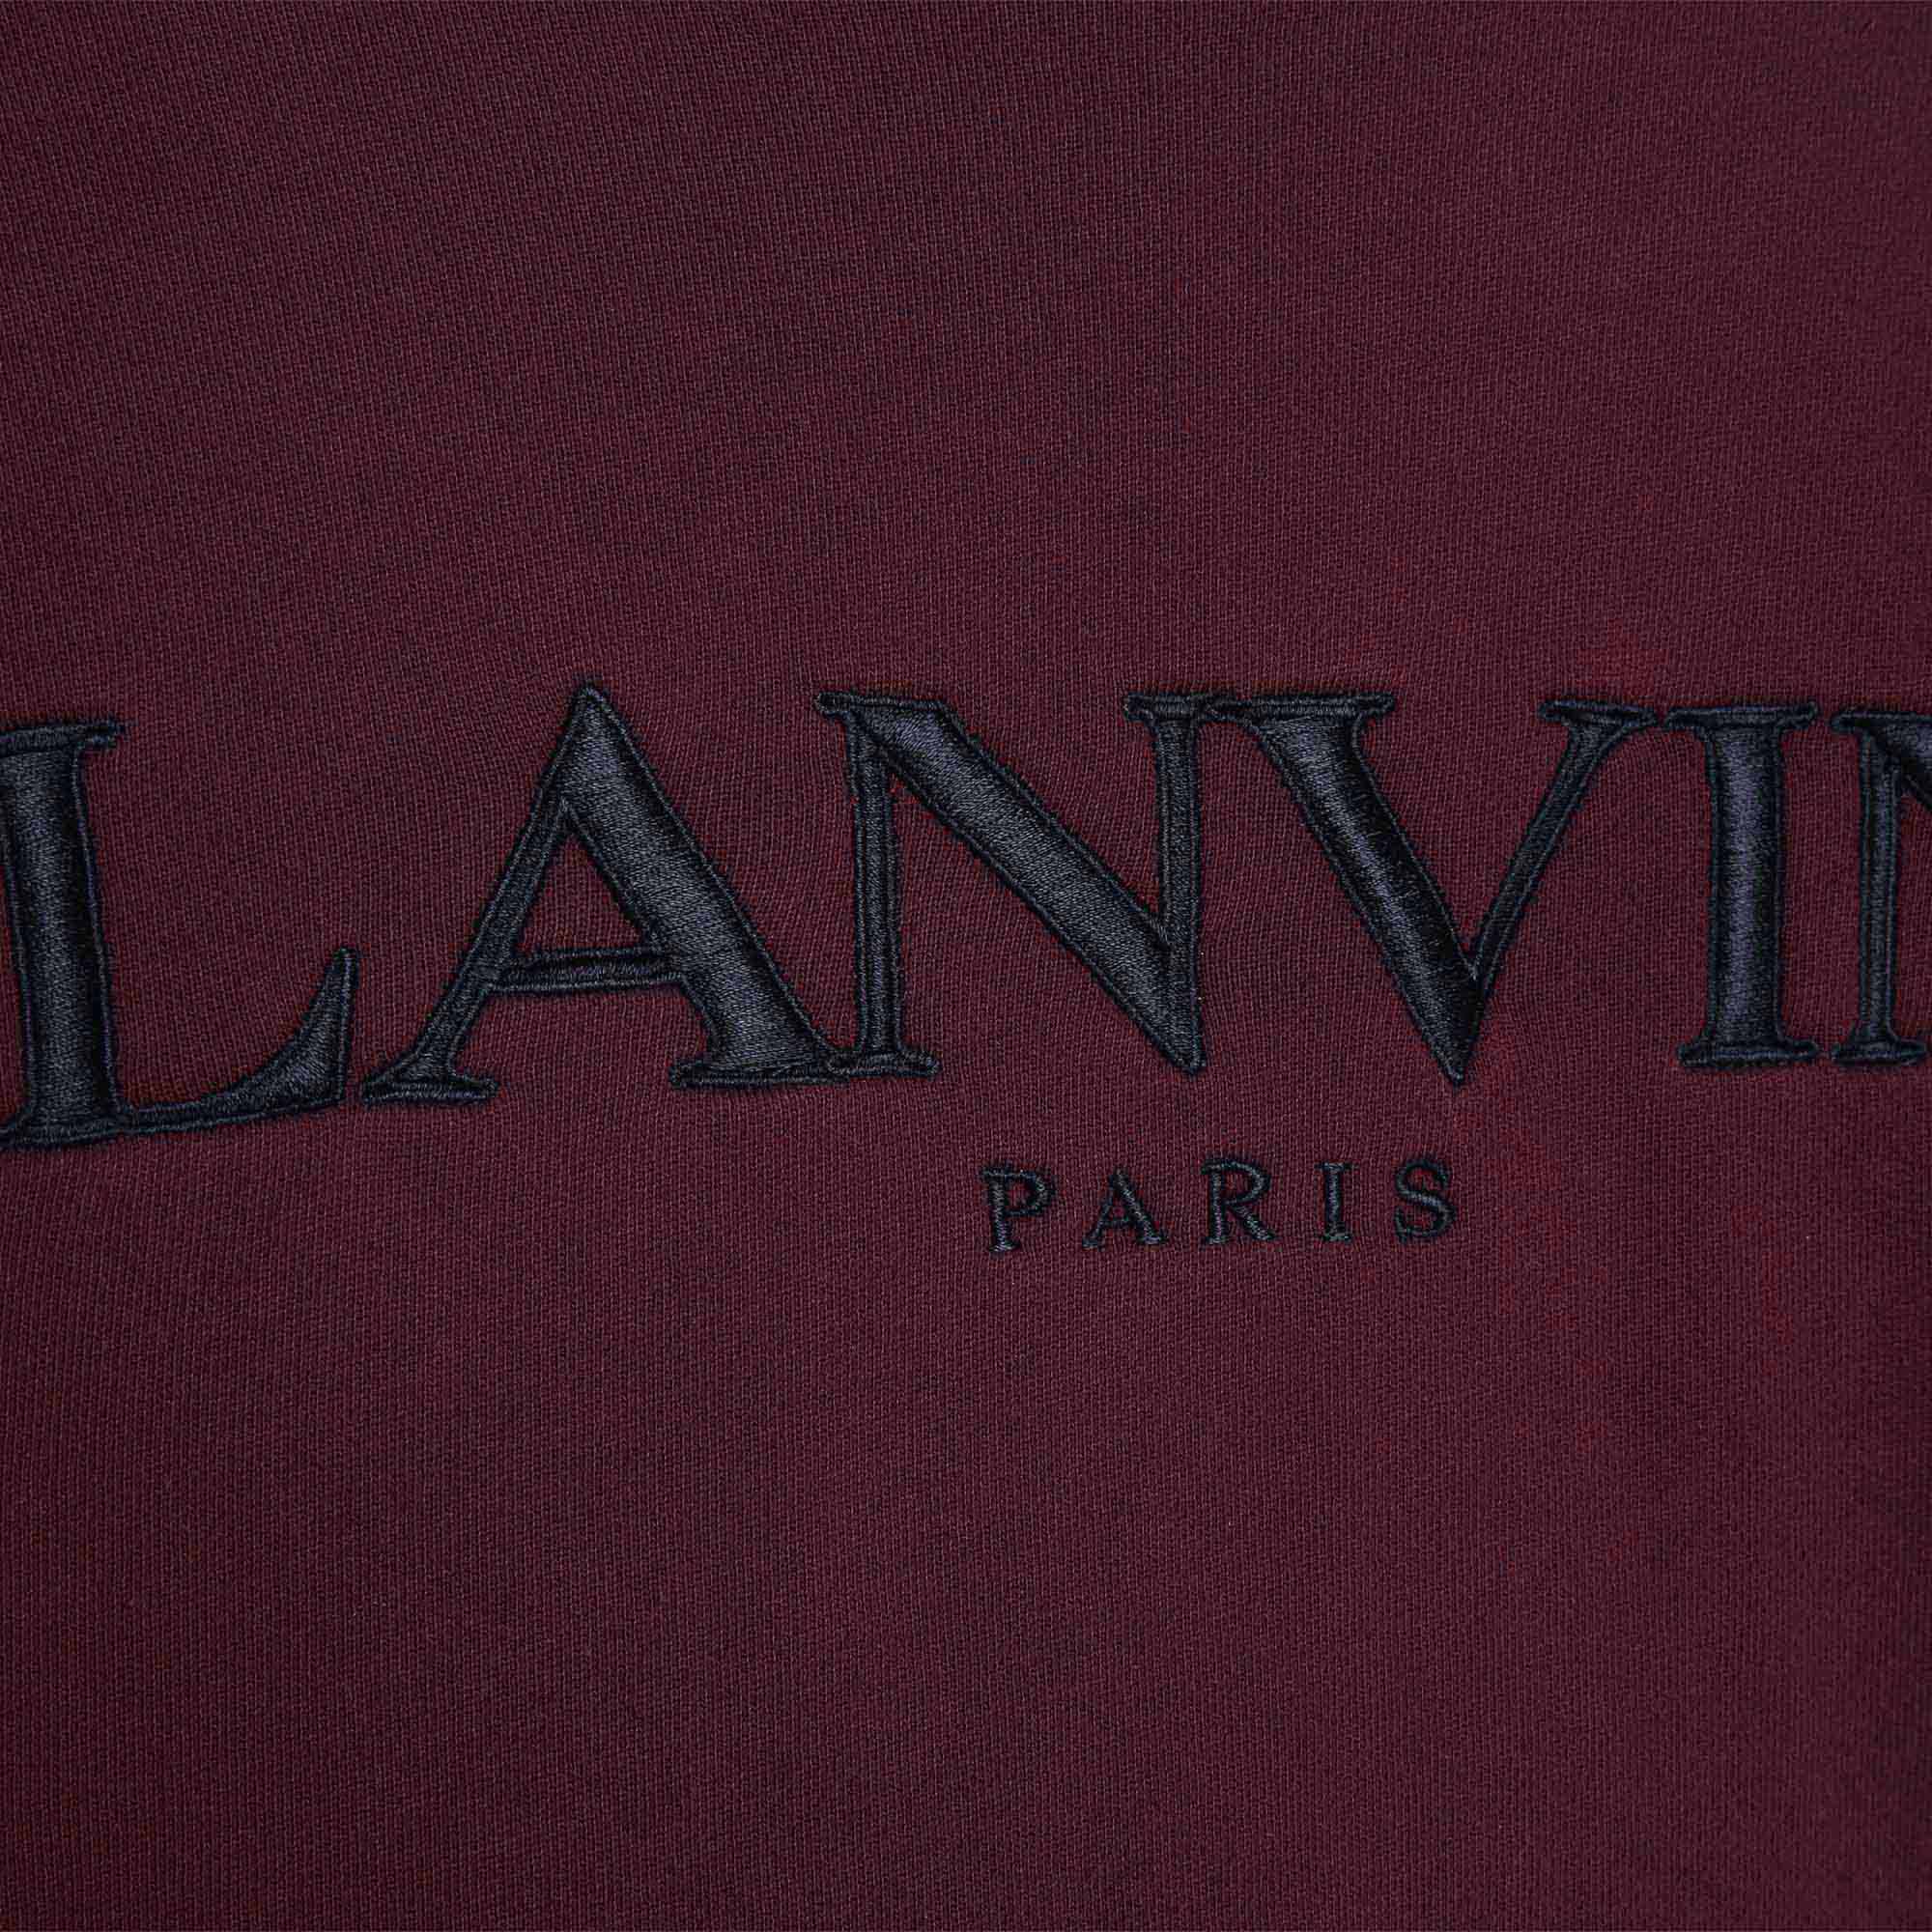 Sweater mit aufgesticktem Logo LANVIN Für JUNGE